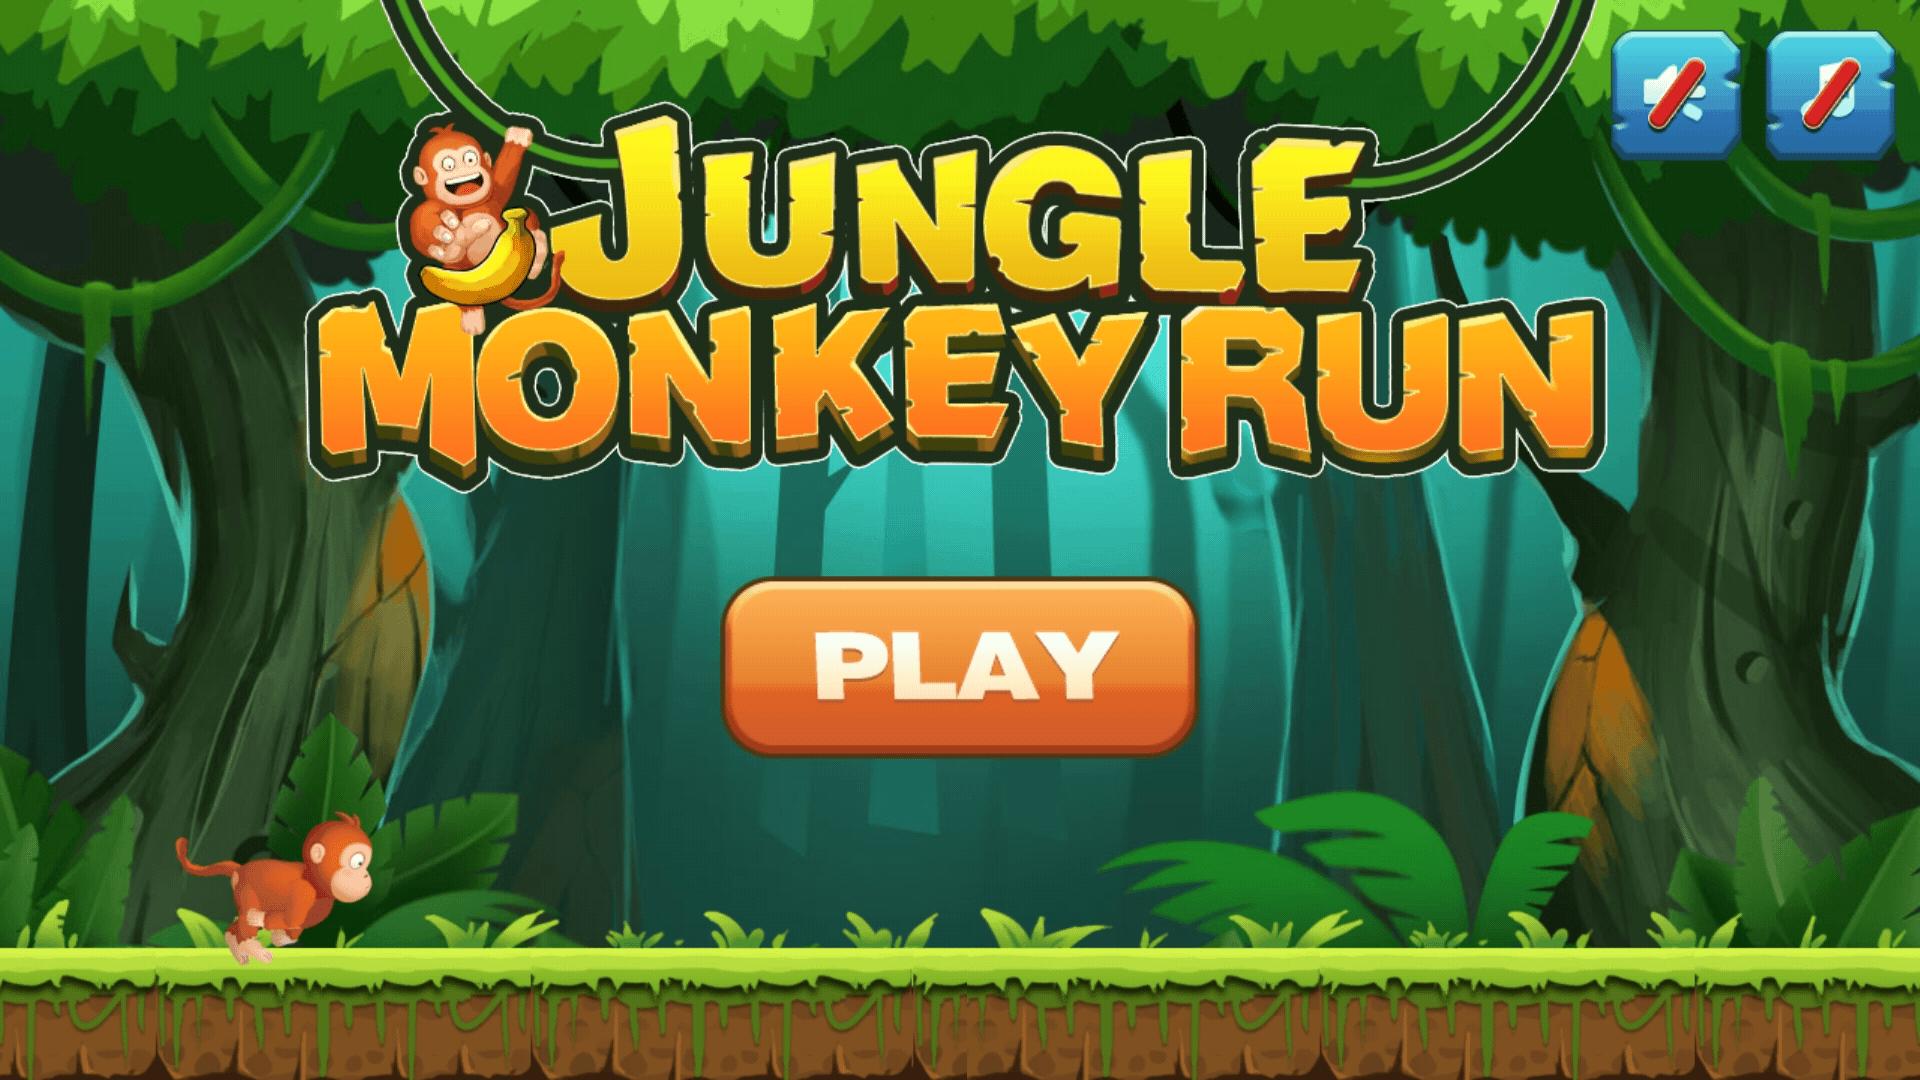 Игра про джунгли. Джангл адвентура игра. Игра про обезьянку в джунглях. Флеш игра джунгли. Игра бродилка джунгли.